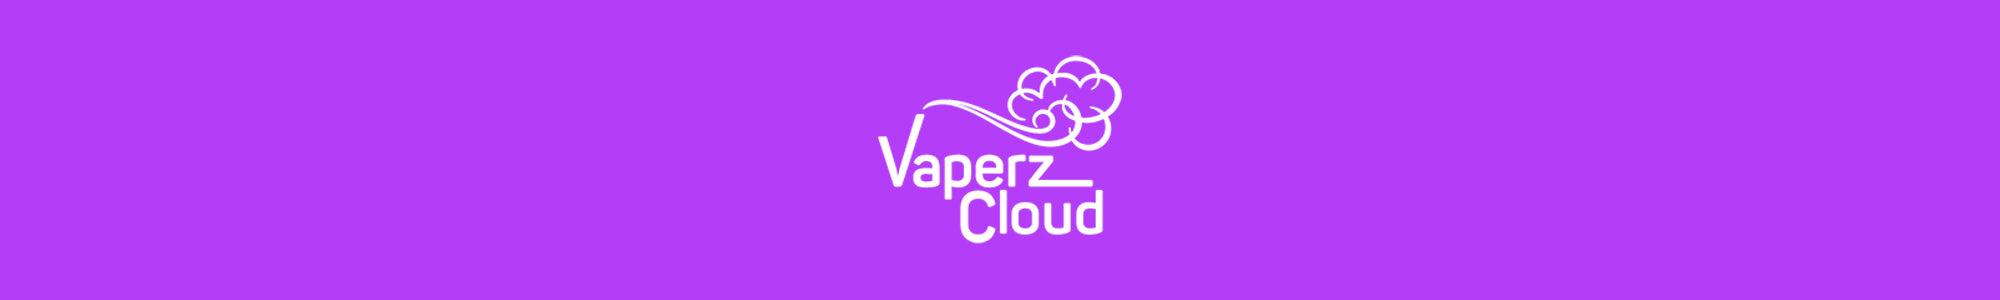 vaperz cloud vape kits & tanks uk